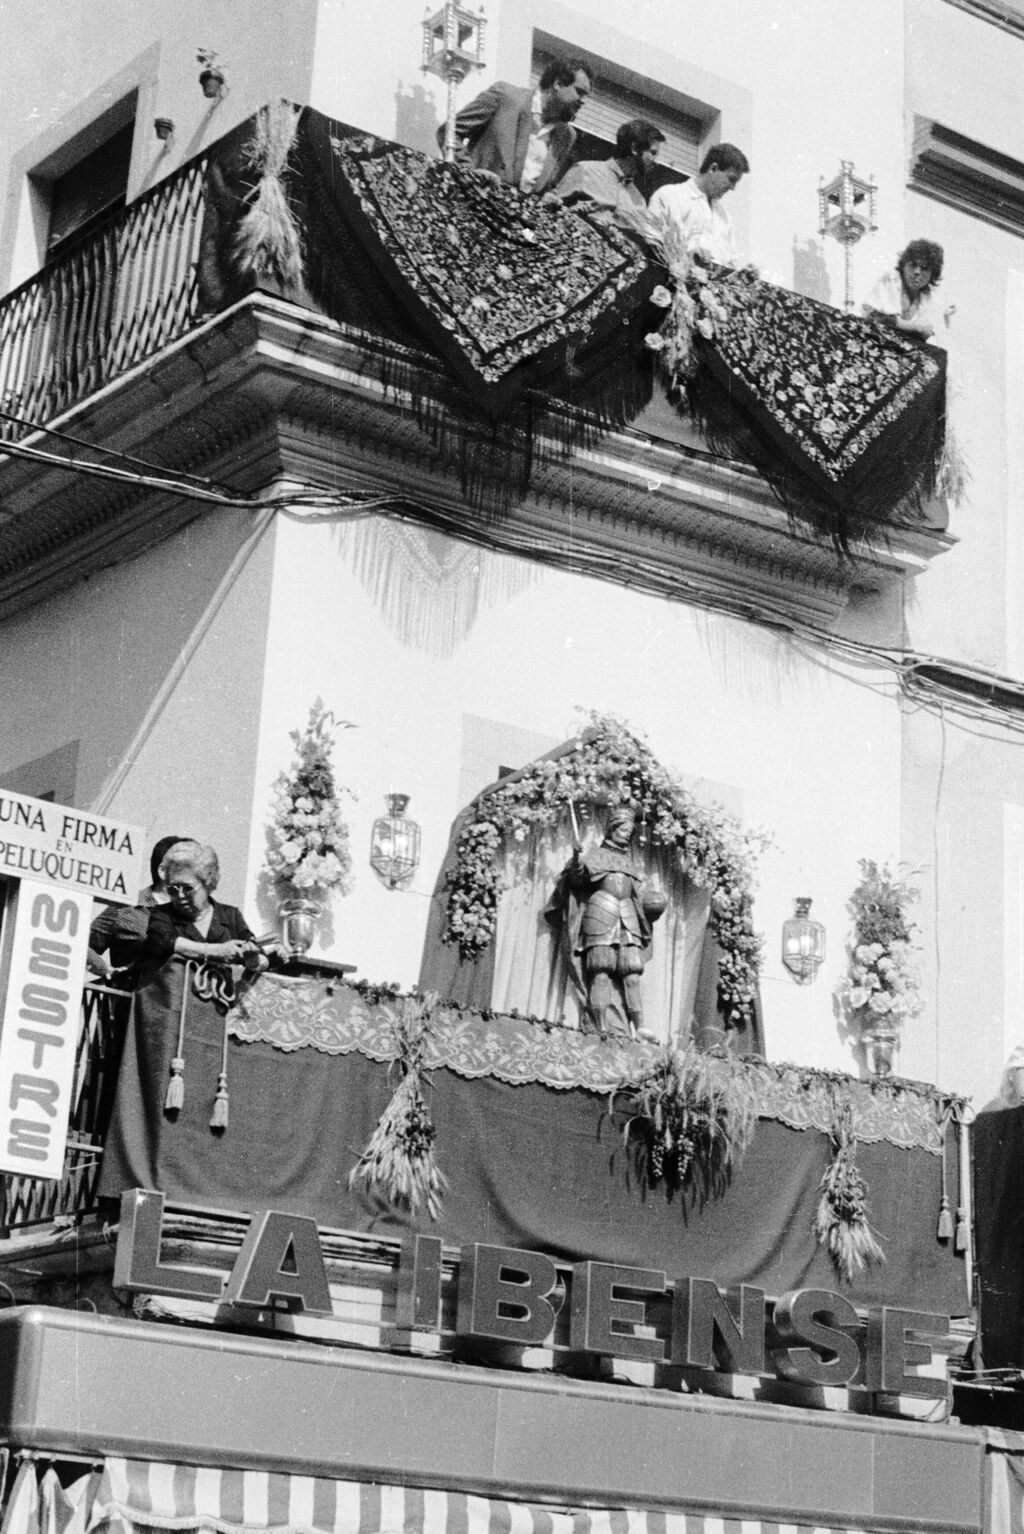 Adorno de balcones en la esquina de Sagasta-Plaza del Salvador.